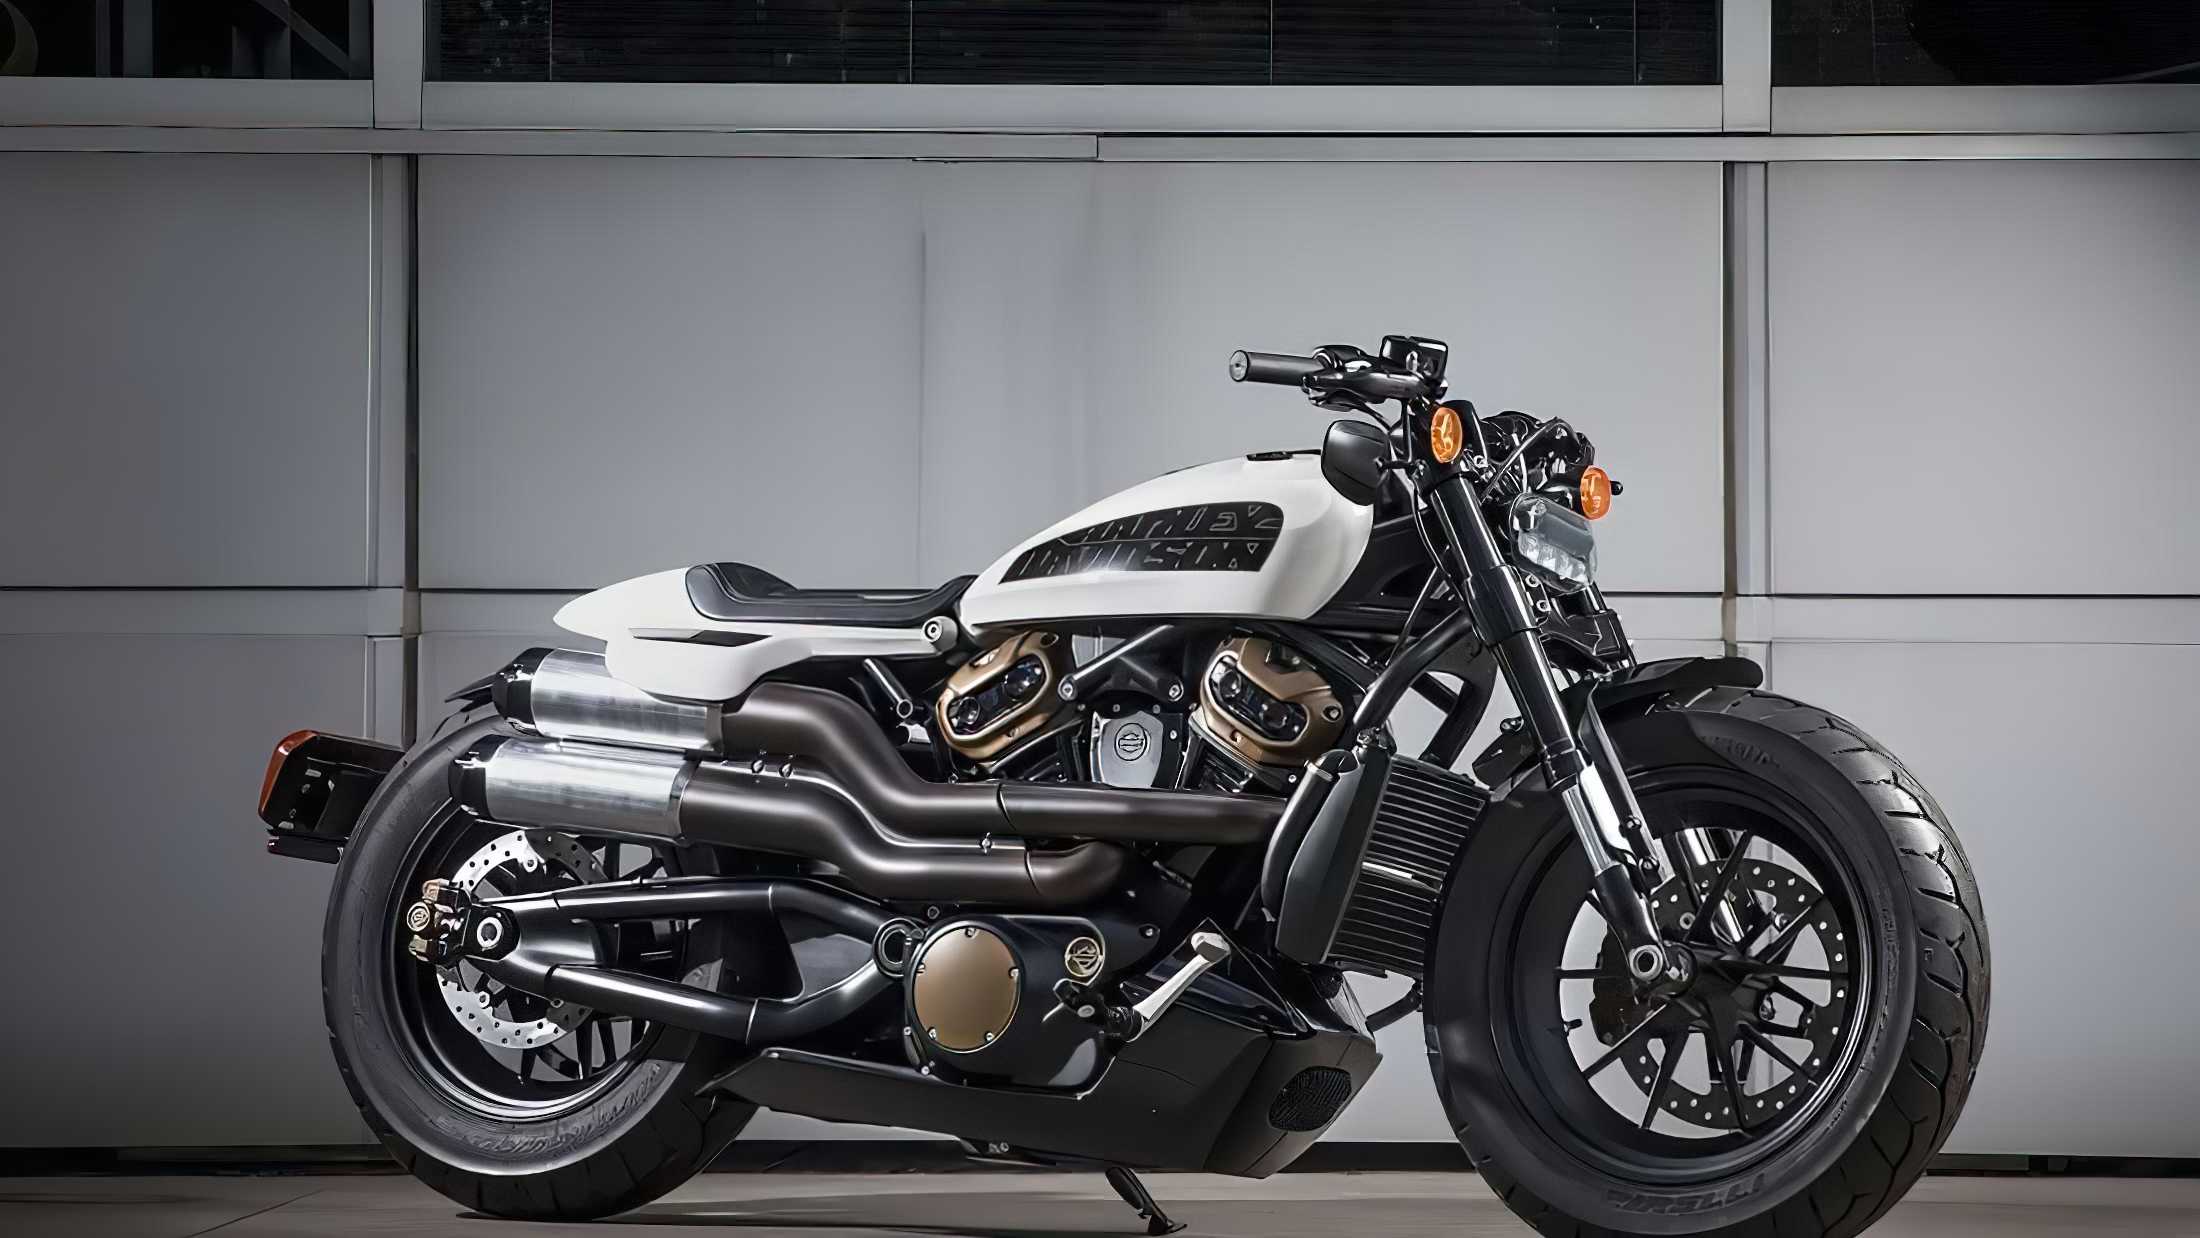 Vorstellung von Harley-Davidson Neumodell angekündigt
- auch in der MOTORRAD NACHRICHTEN APP